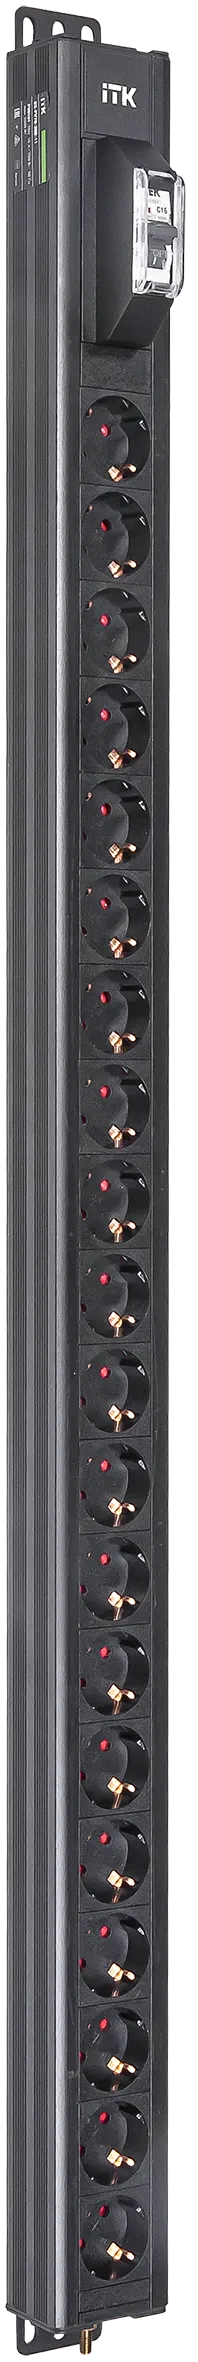 ITK BASE PDU вертикальный PV0101 25U 1 фаза 16А 20 розеток SCHUKO (немецкий стандарт) без кабеля с входным разъемом C20